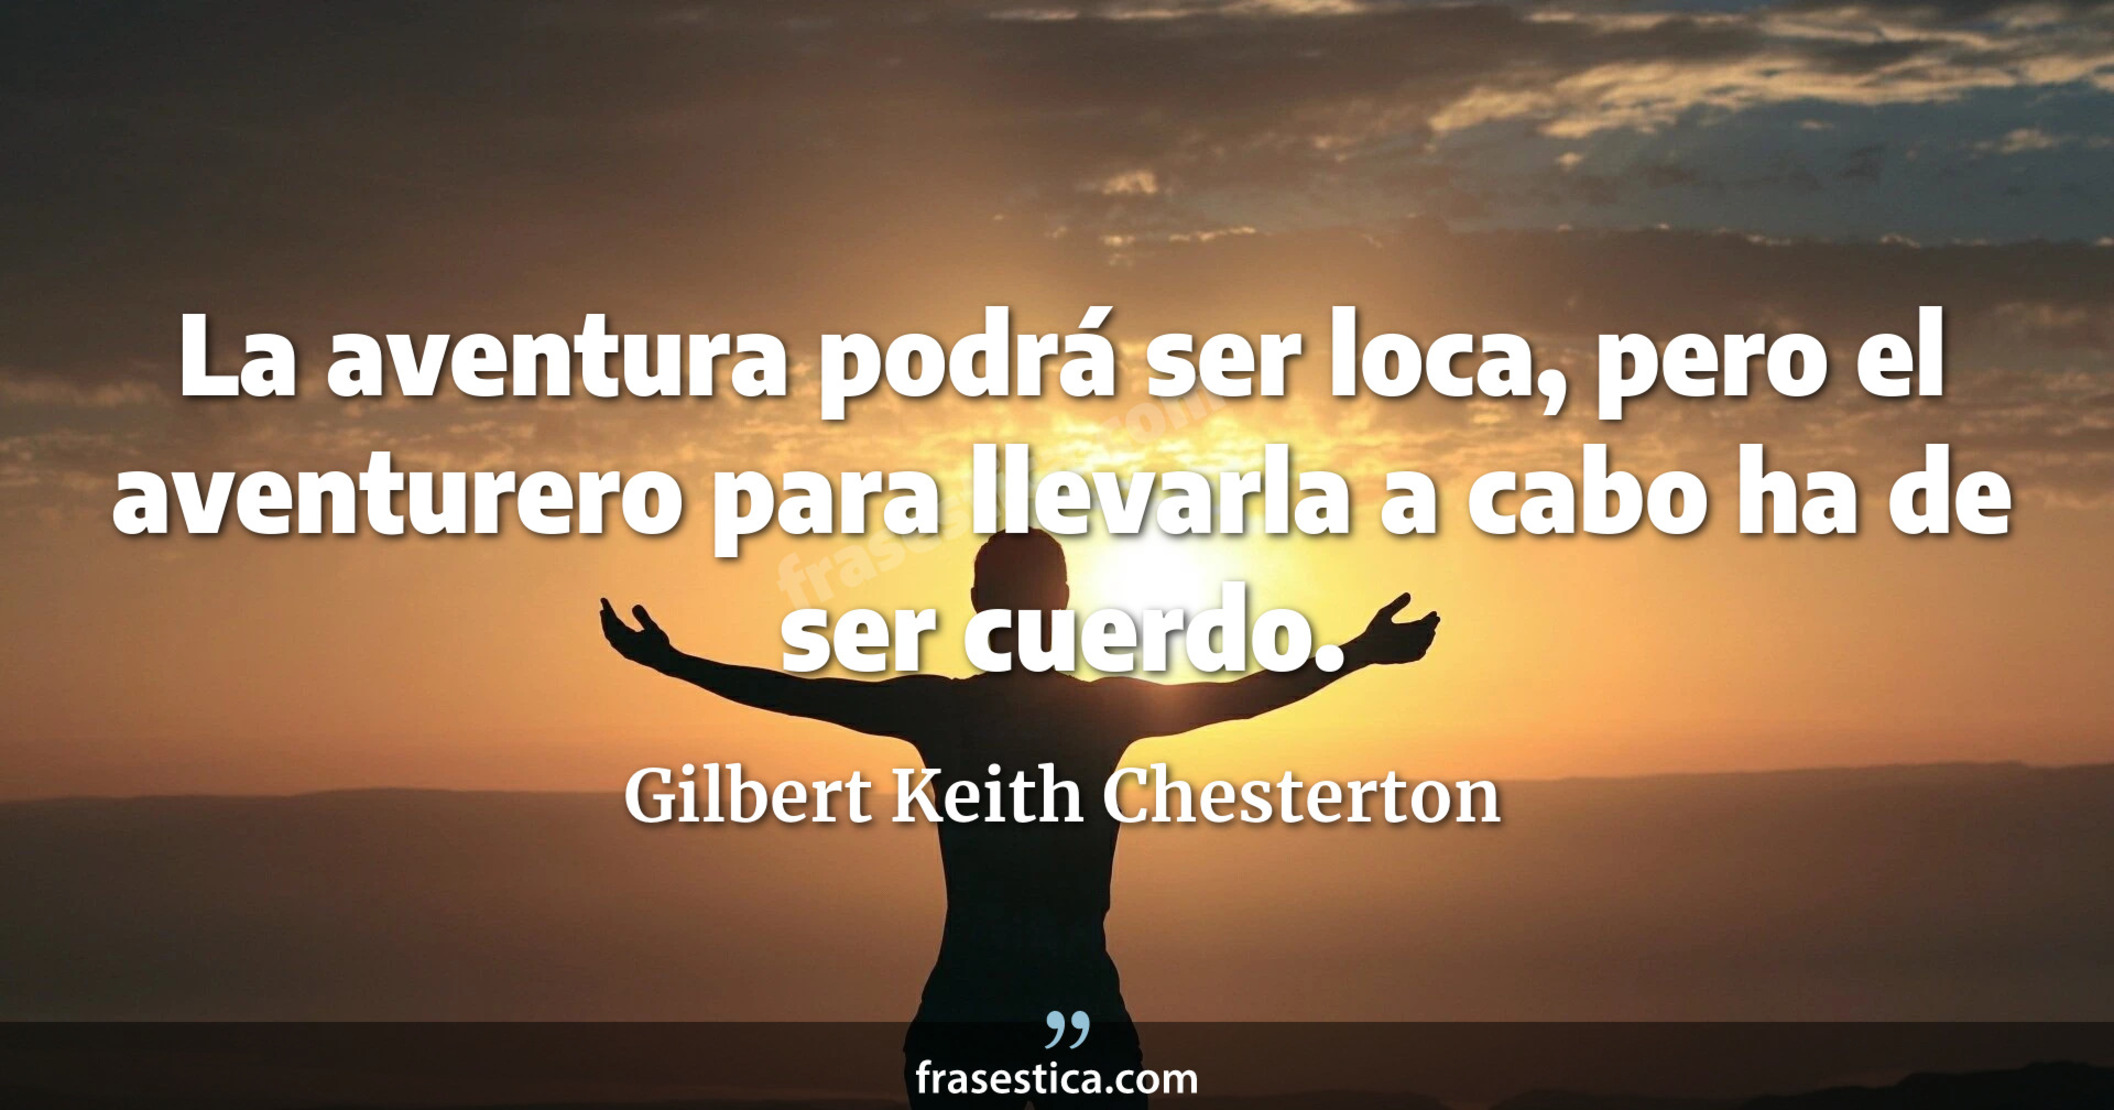 La aventura podrá ser loca, pero el aventurero para llevarla a cabo ha de ser cuerdo. - Gilbert Keith Chesterton